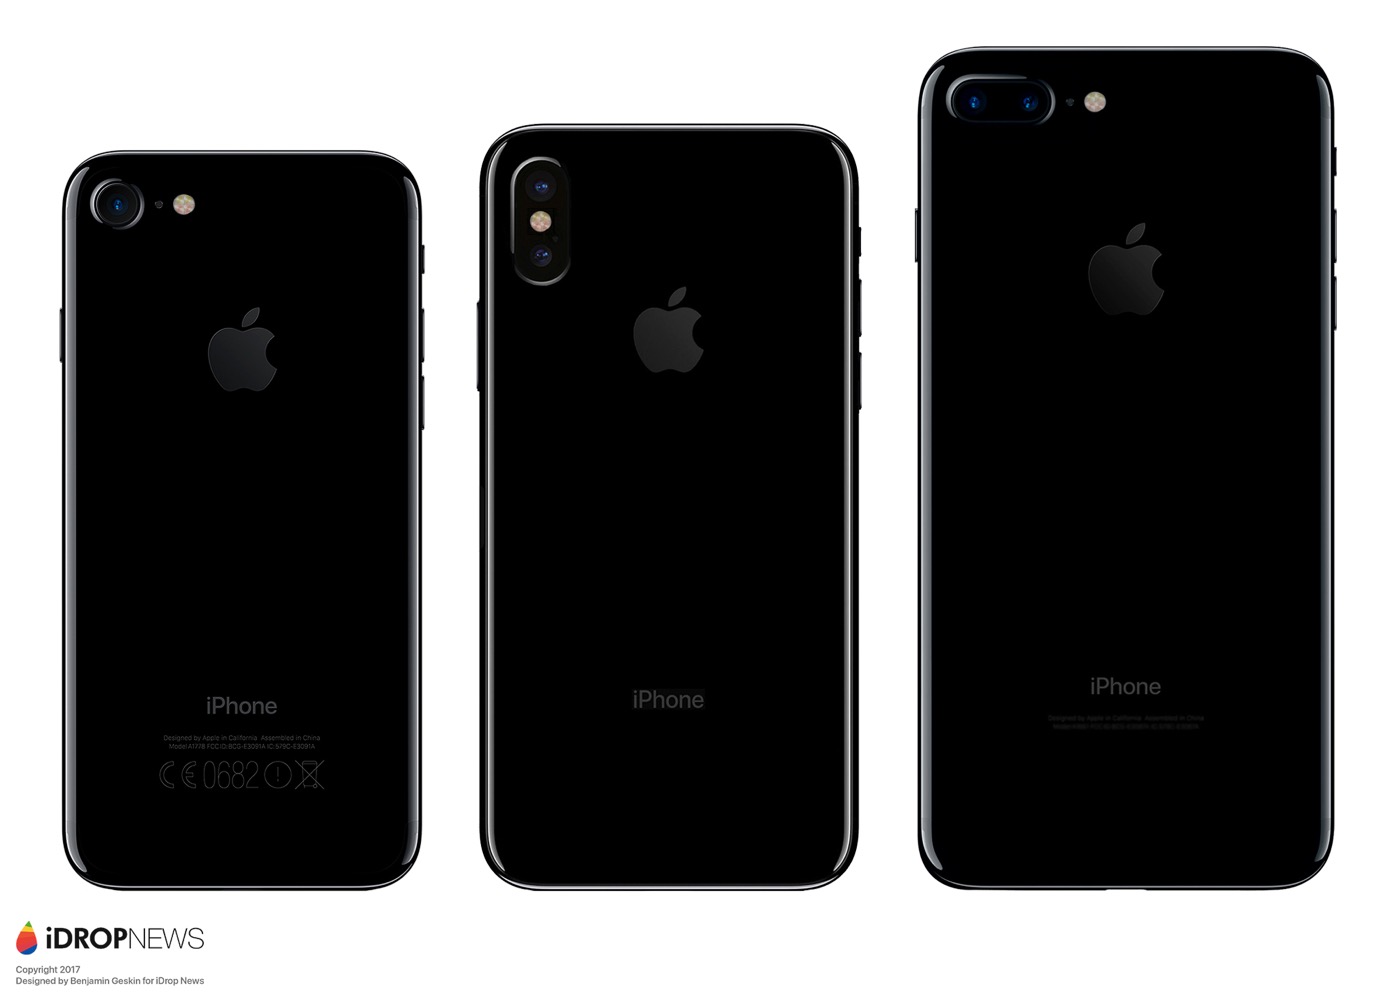 最新の図面をもとに作成された｢iPhone 8｣のレンダリング画像 ｰ 他社スマホとの大きさ比較画像も